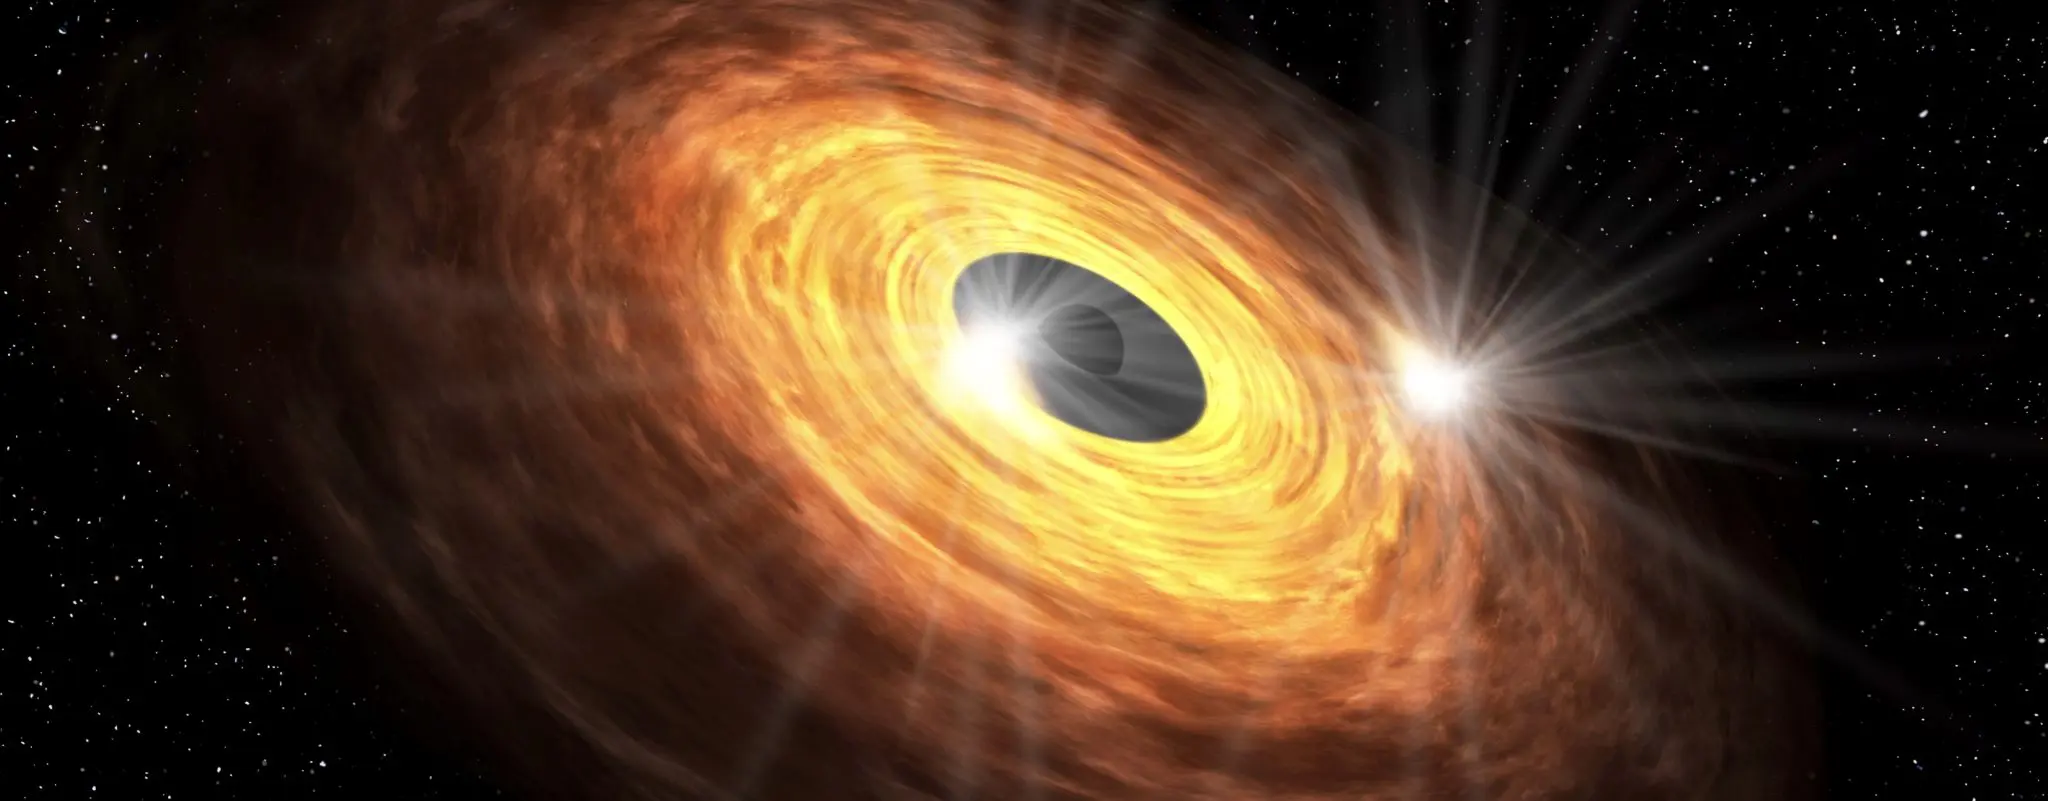 El agujero negro en el centro de nuestra Vía Láctea titila